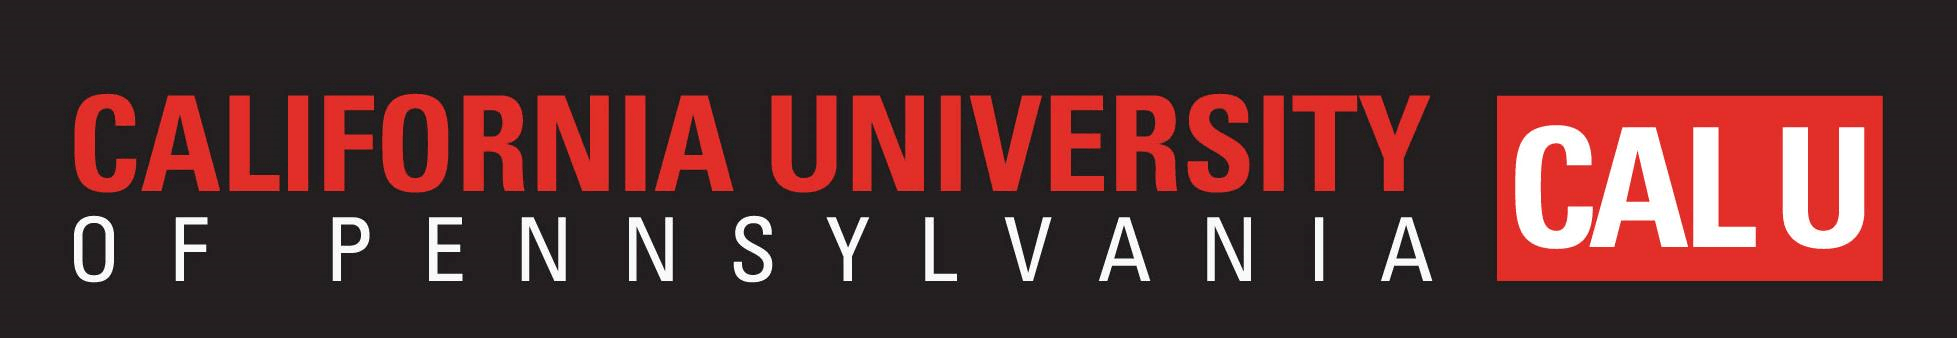 Calu Logo - Campus Profile #10: California University of Pennsylvania – Campus ...